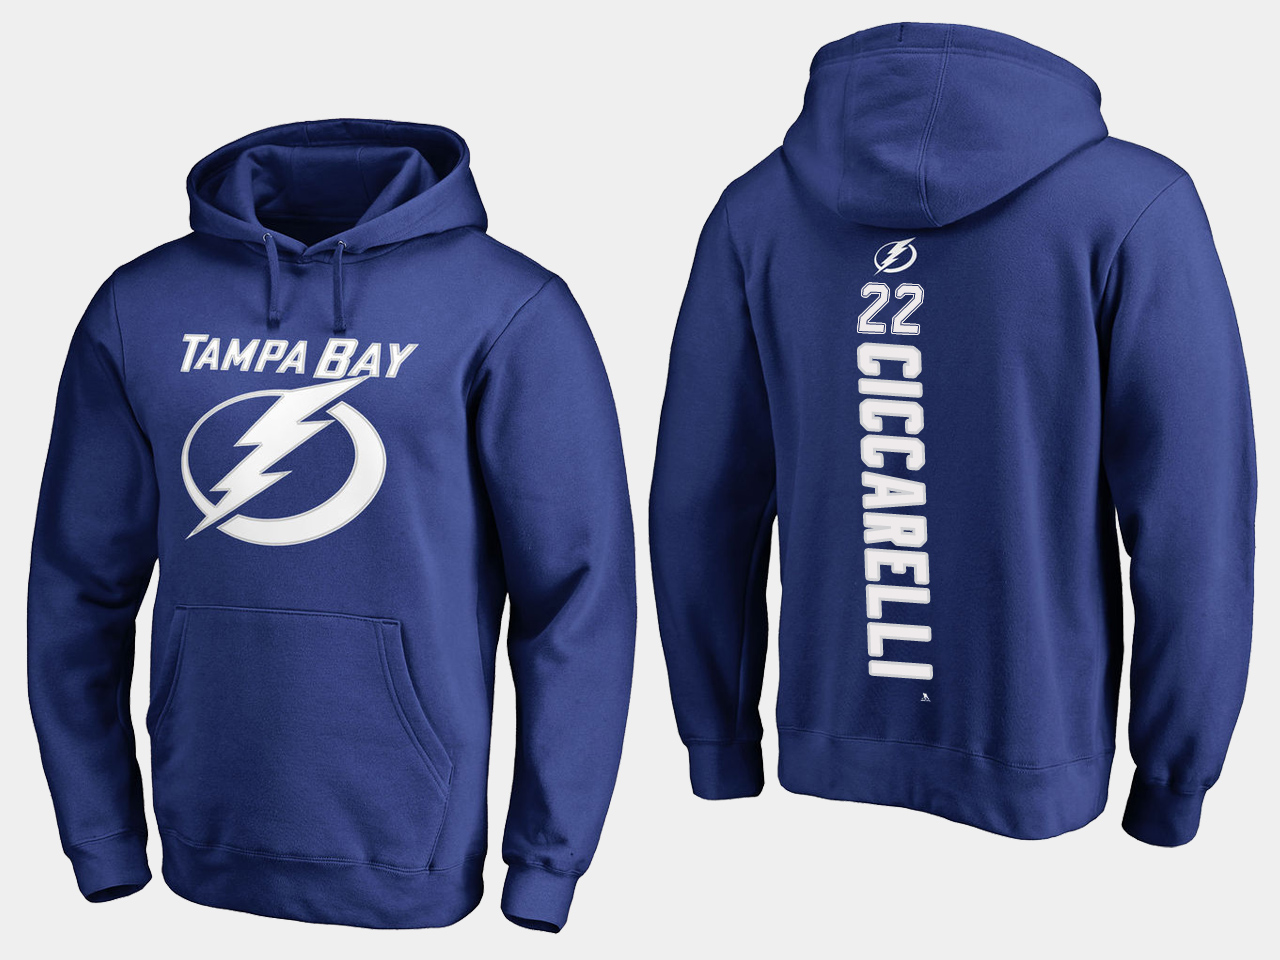 NHL Men adidas Tampa Bay Lightning 22 Ciccarelli blue hoodie